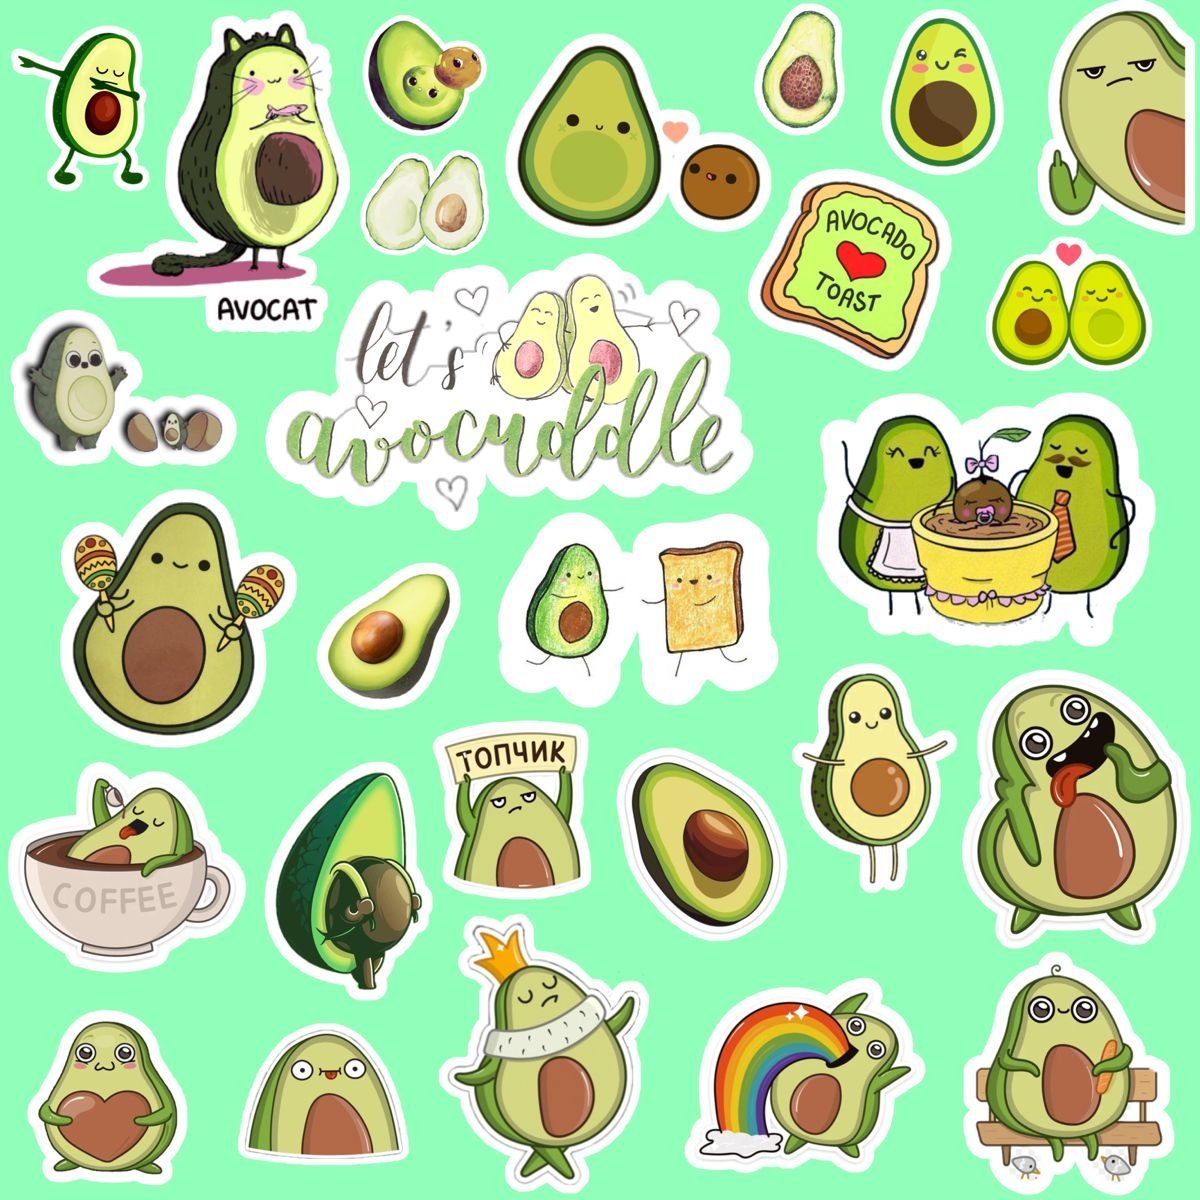 Раскраска великолепная наклейка с авокадо